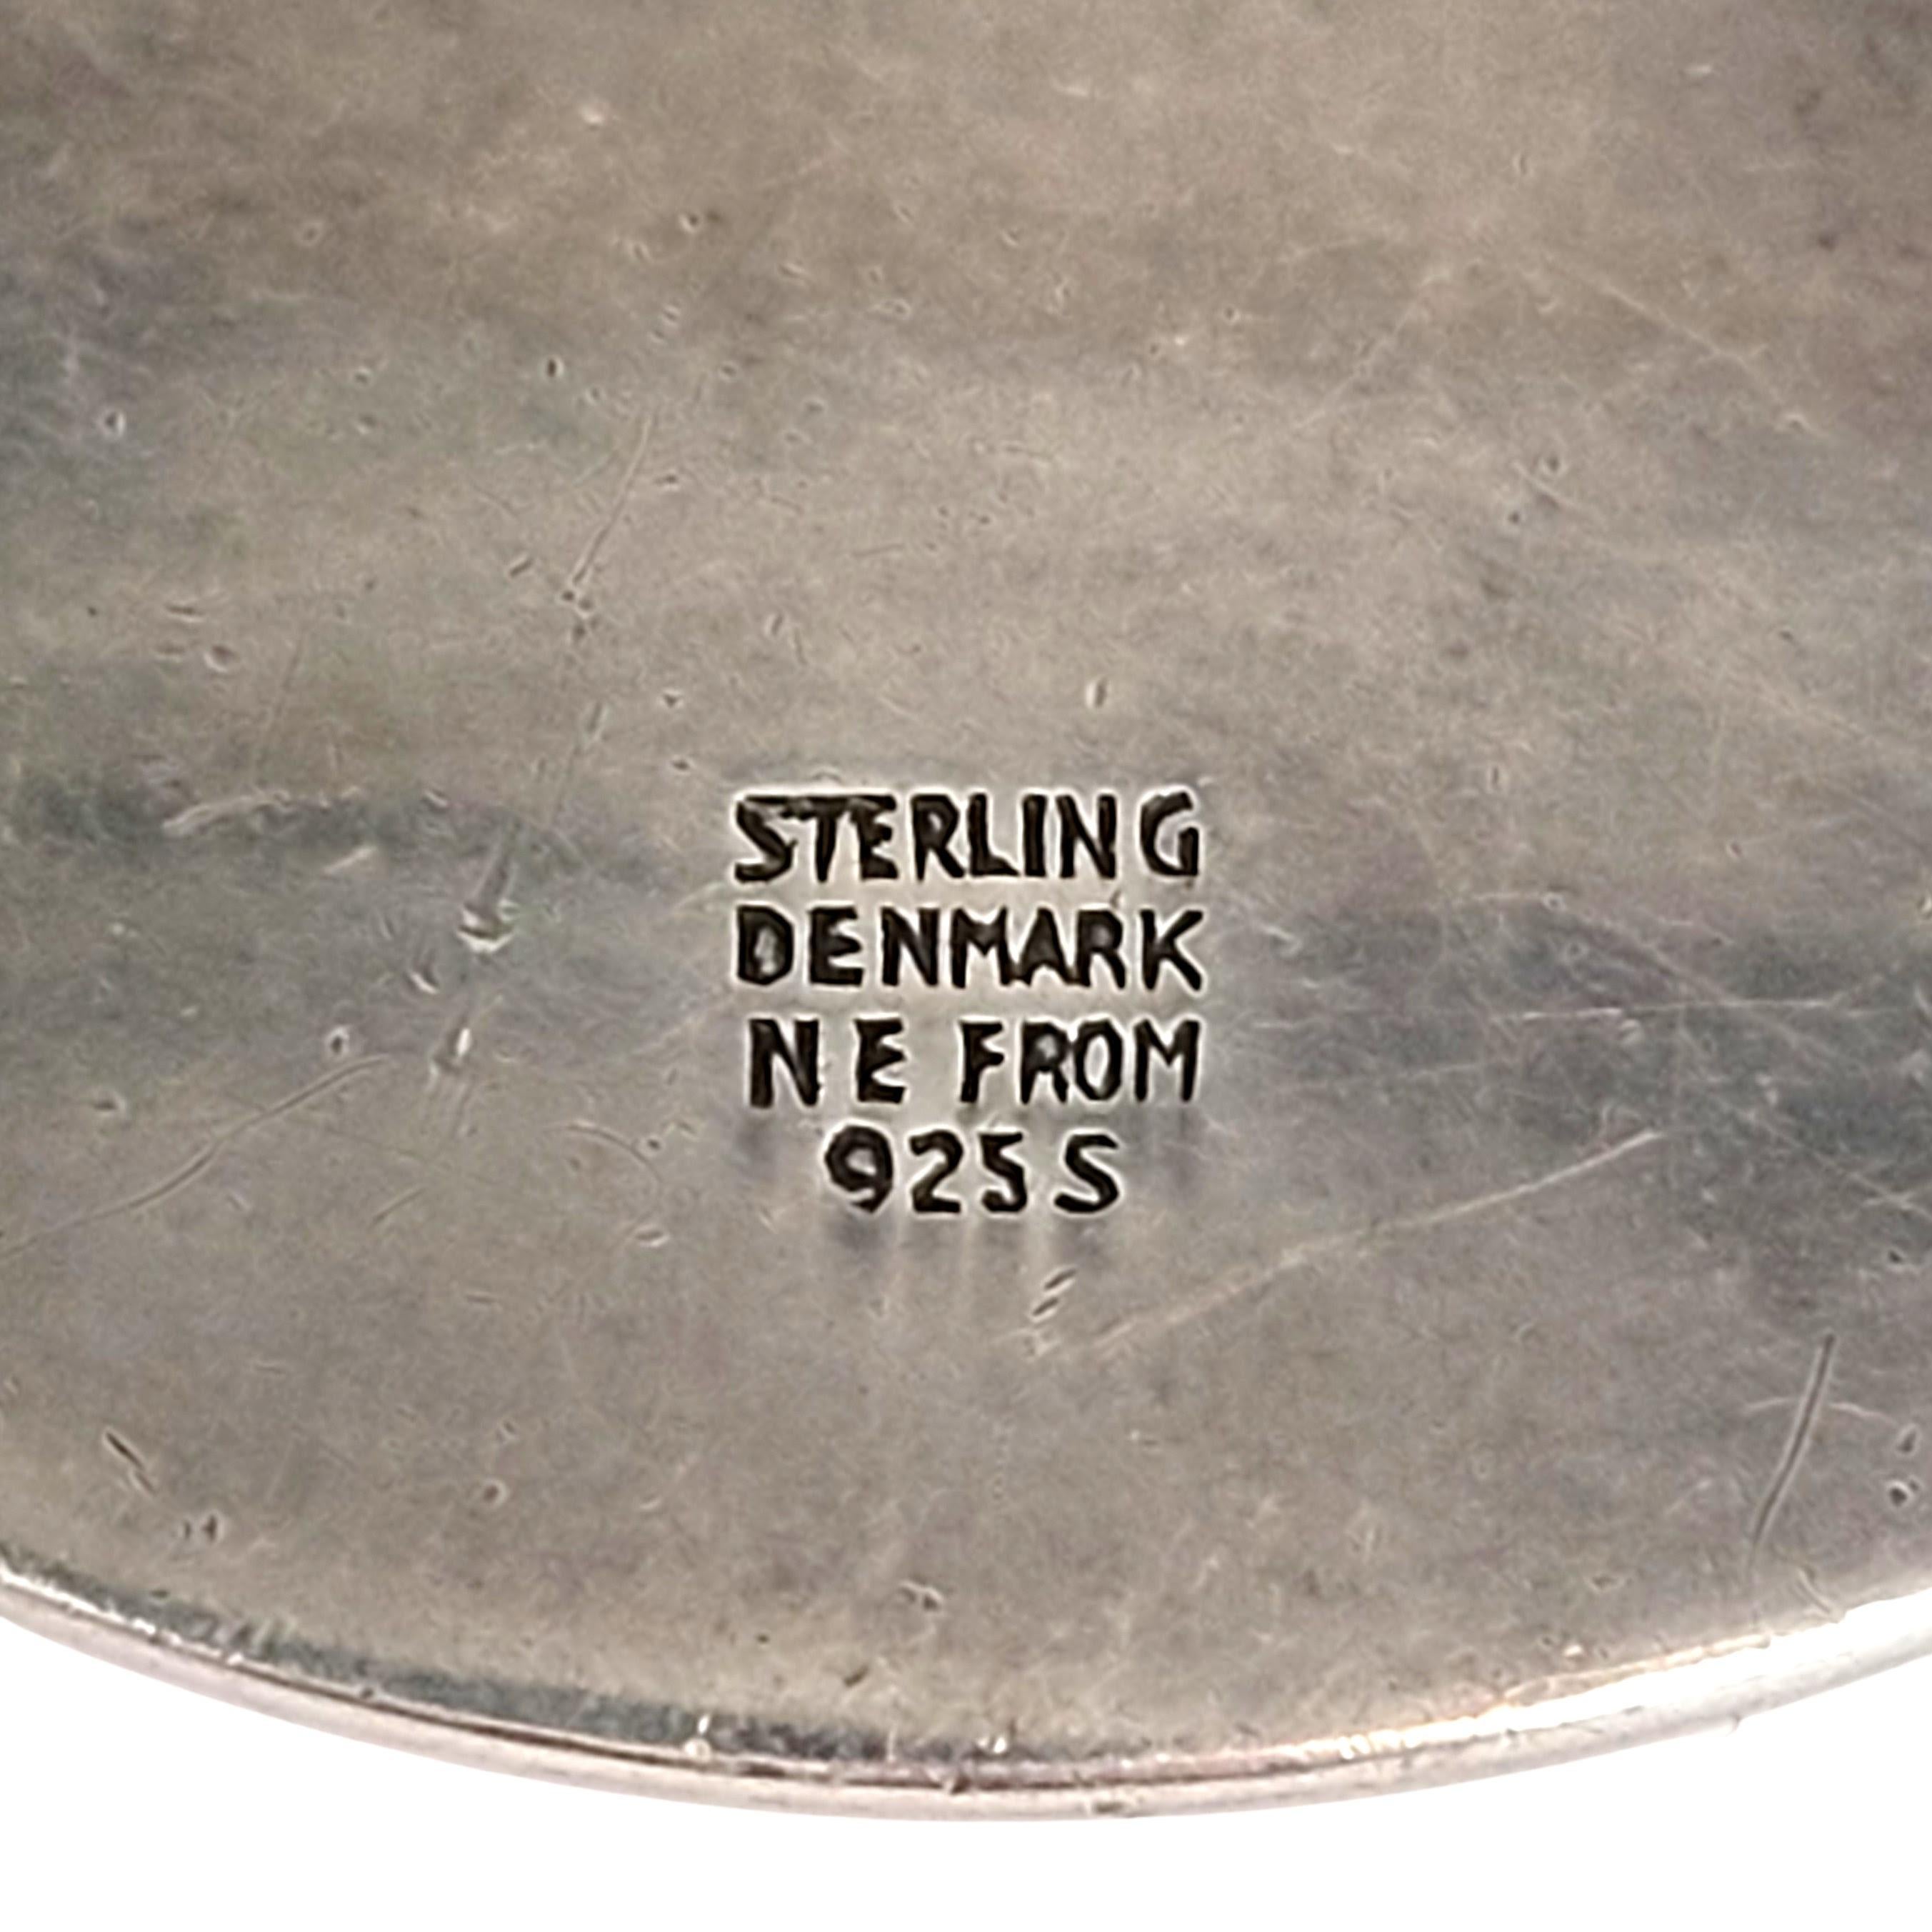 sterling denmark nefrom 9255